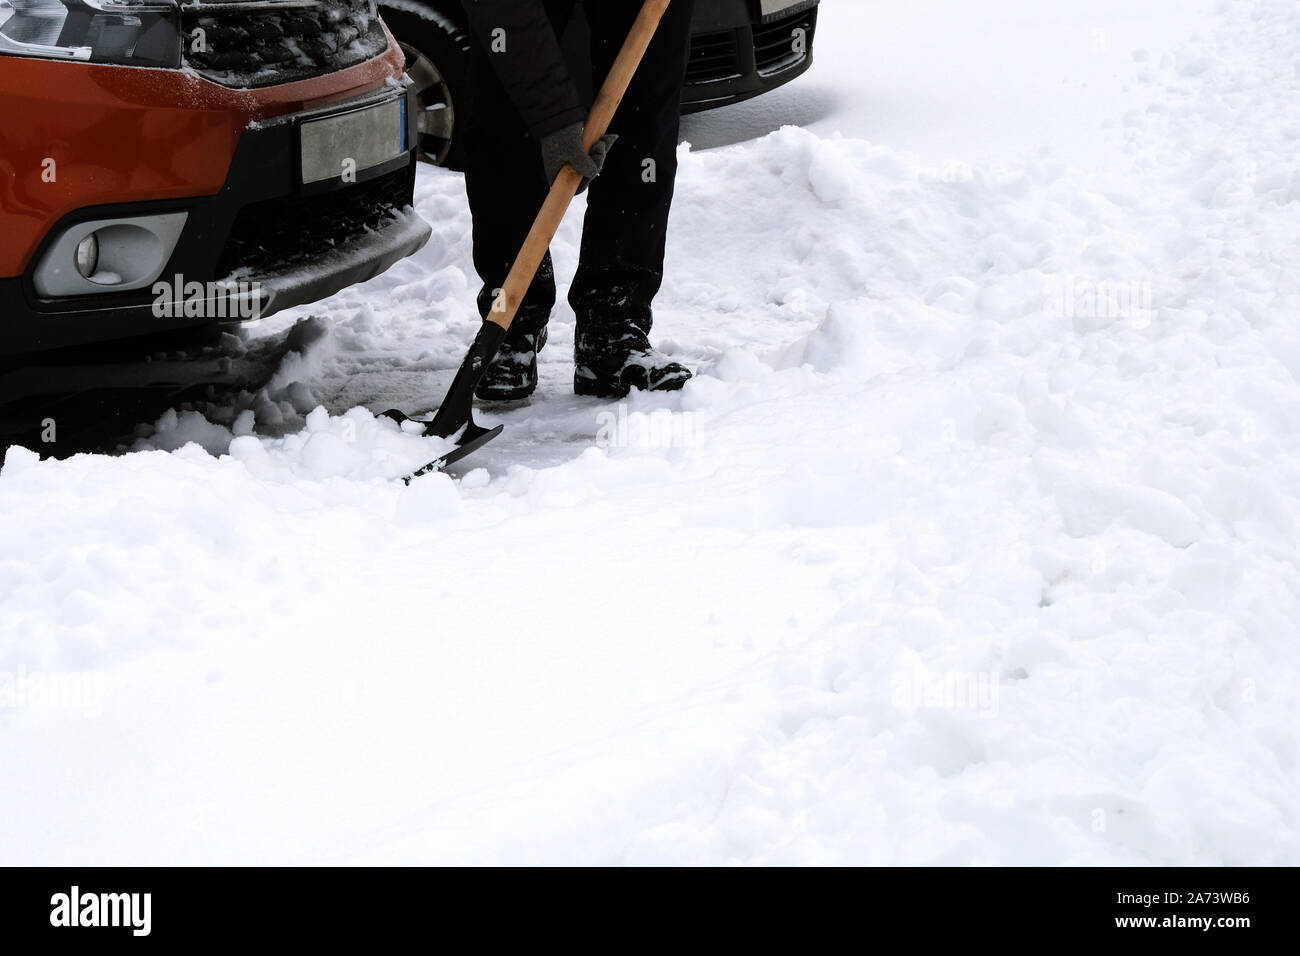 Le brossage et l'homme de pelleter la neige voiture orange en hiver après des chutes de neige. Pelle à main. Problèmes d'hiver des automobilistes. Banque D'Images